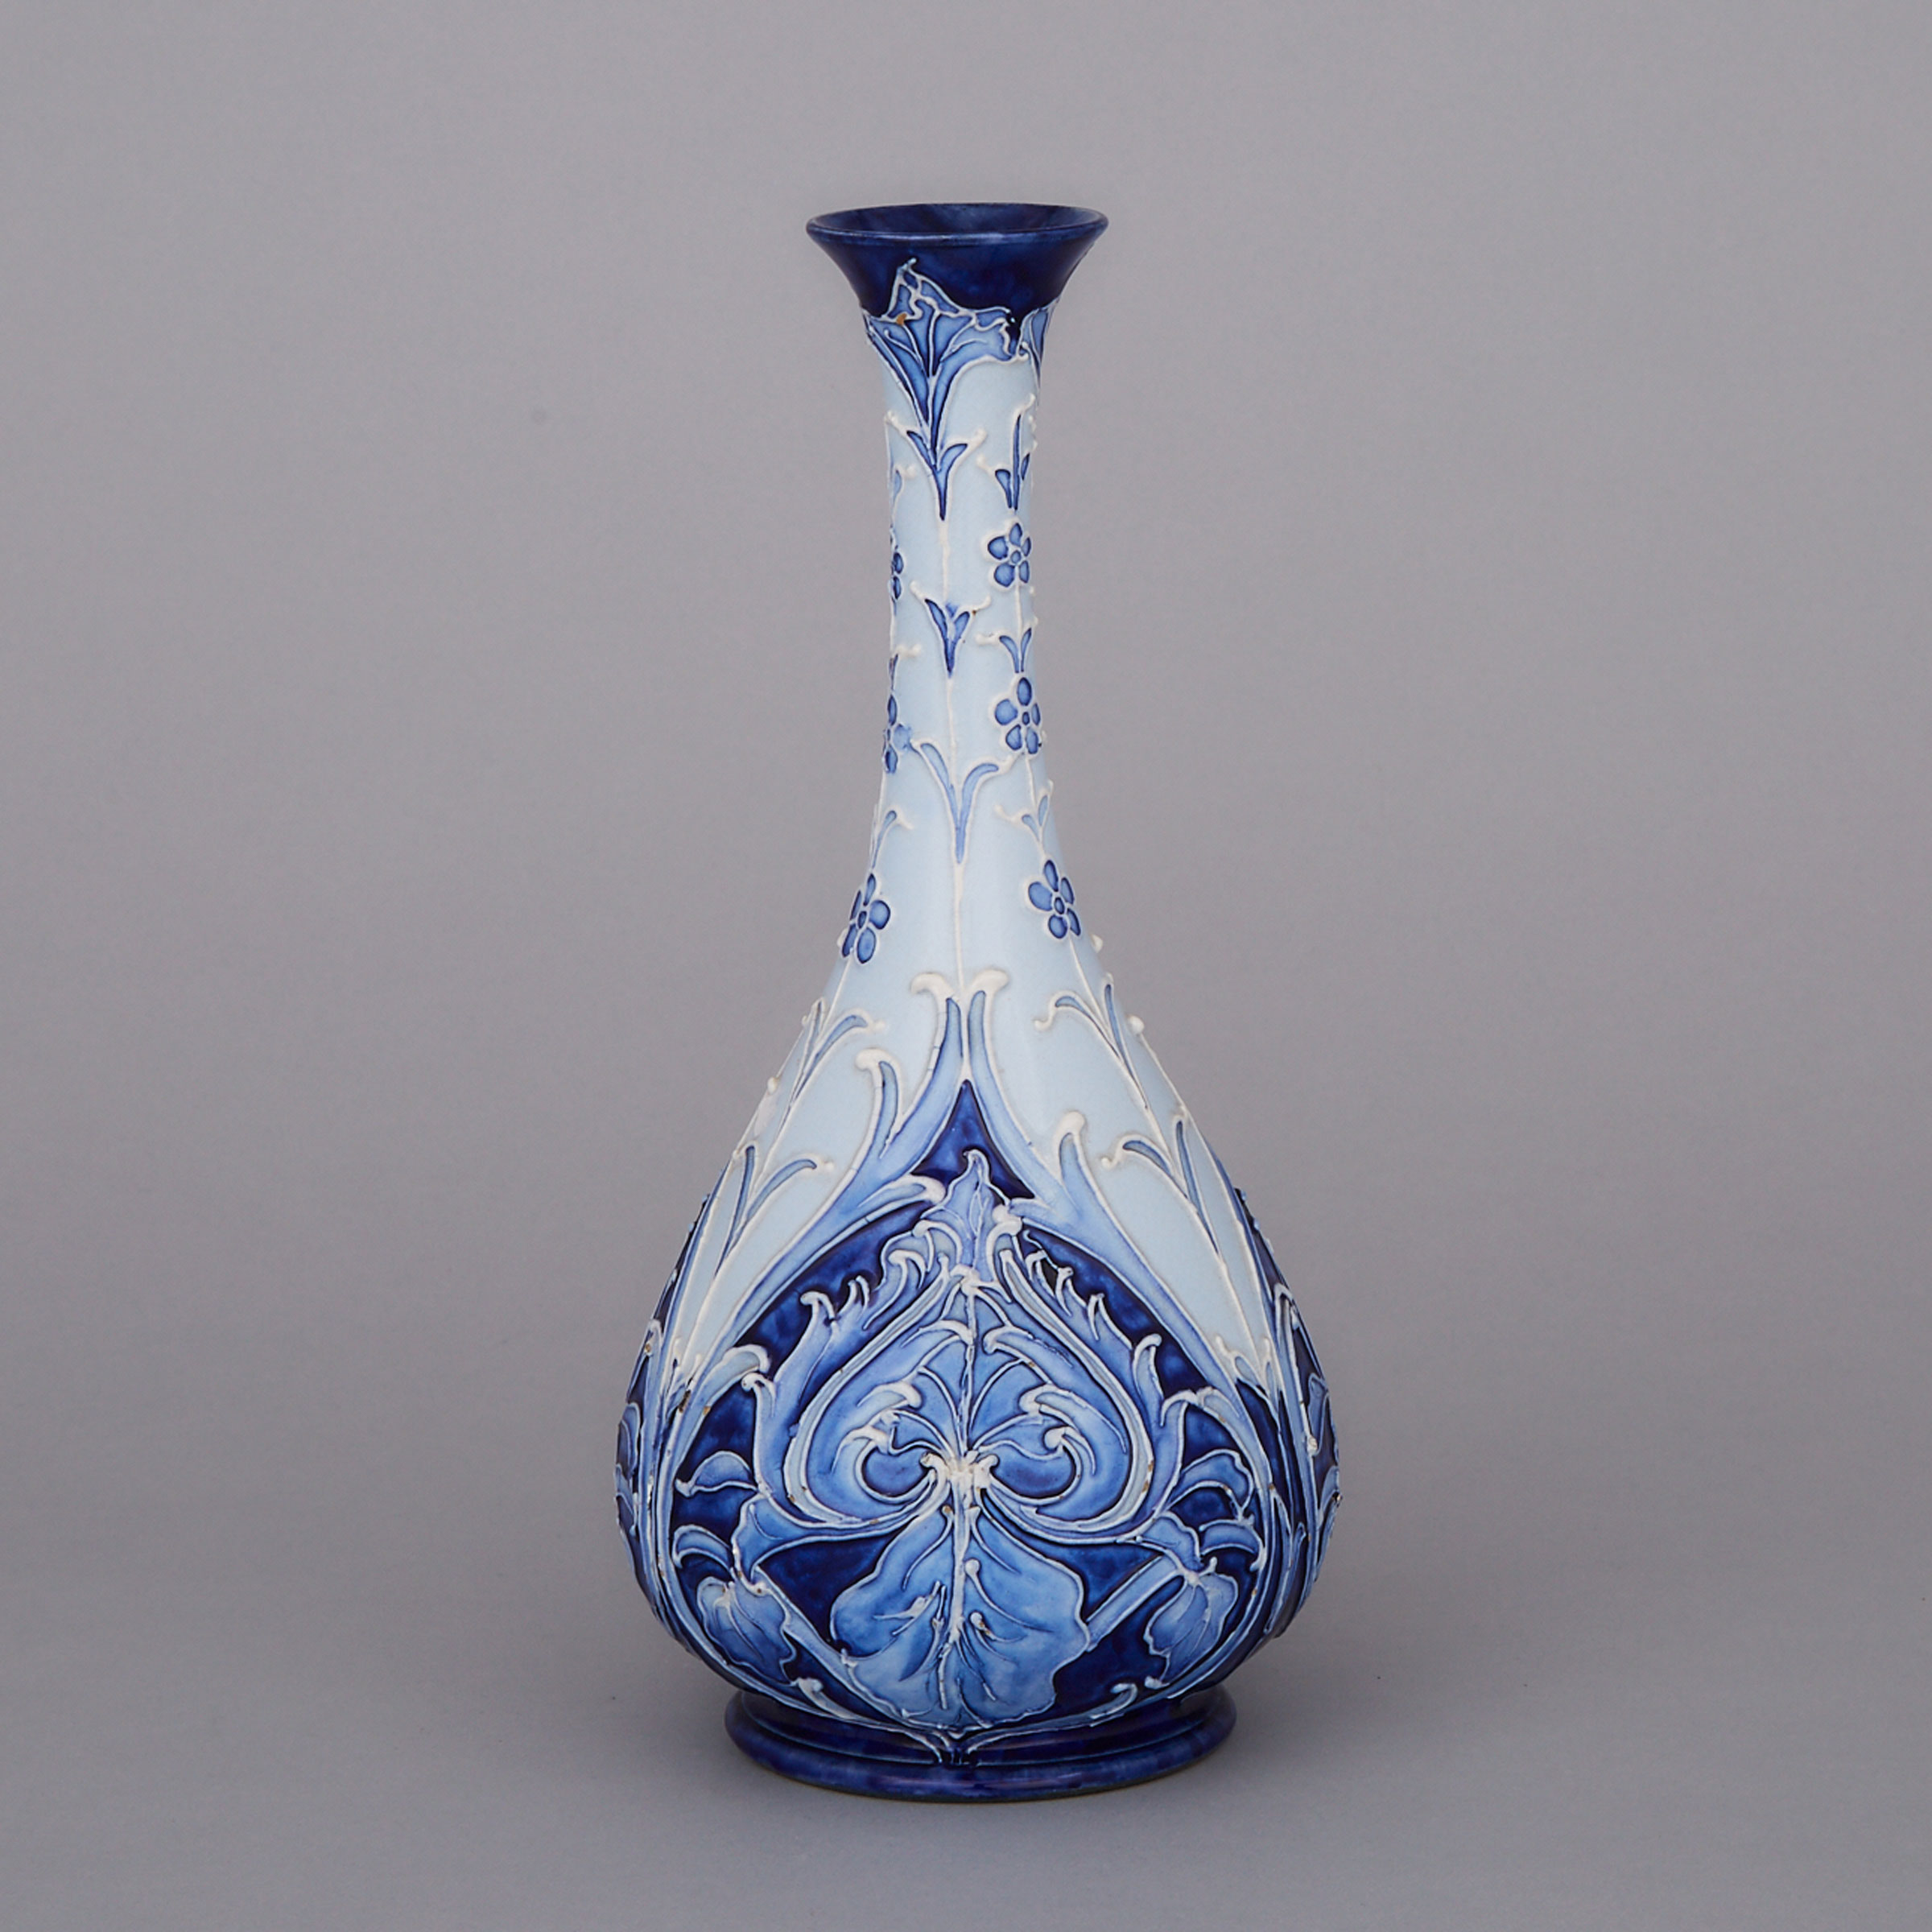 Macintyre Moorcroft Florian Ware Vase, c.1900